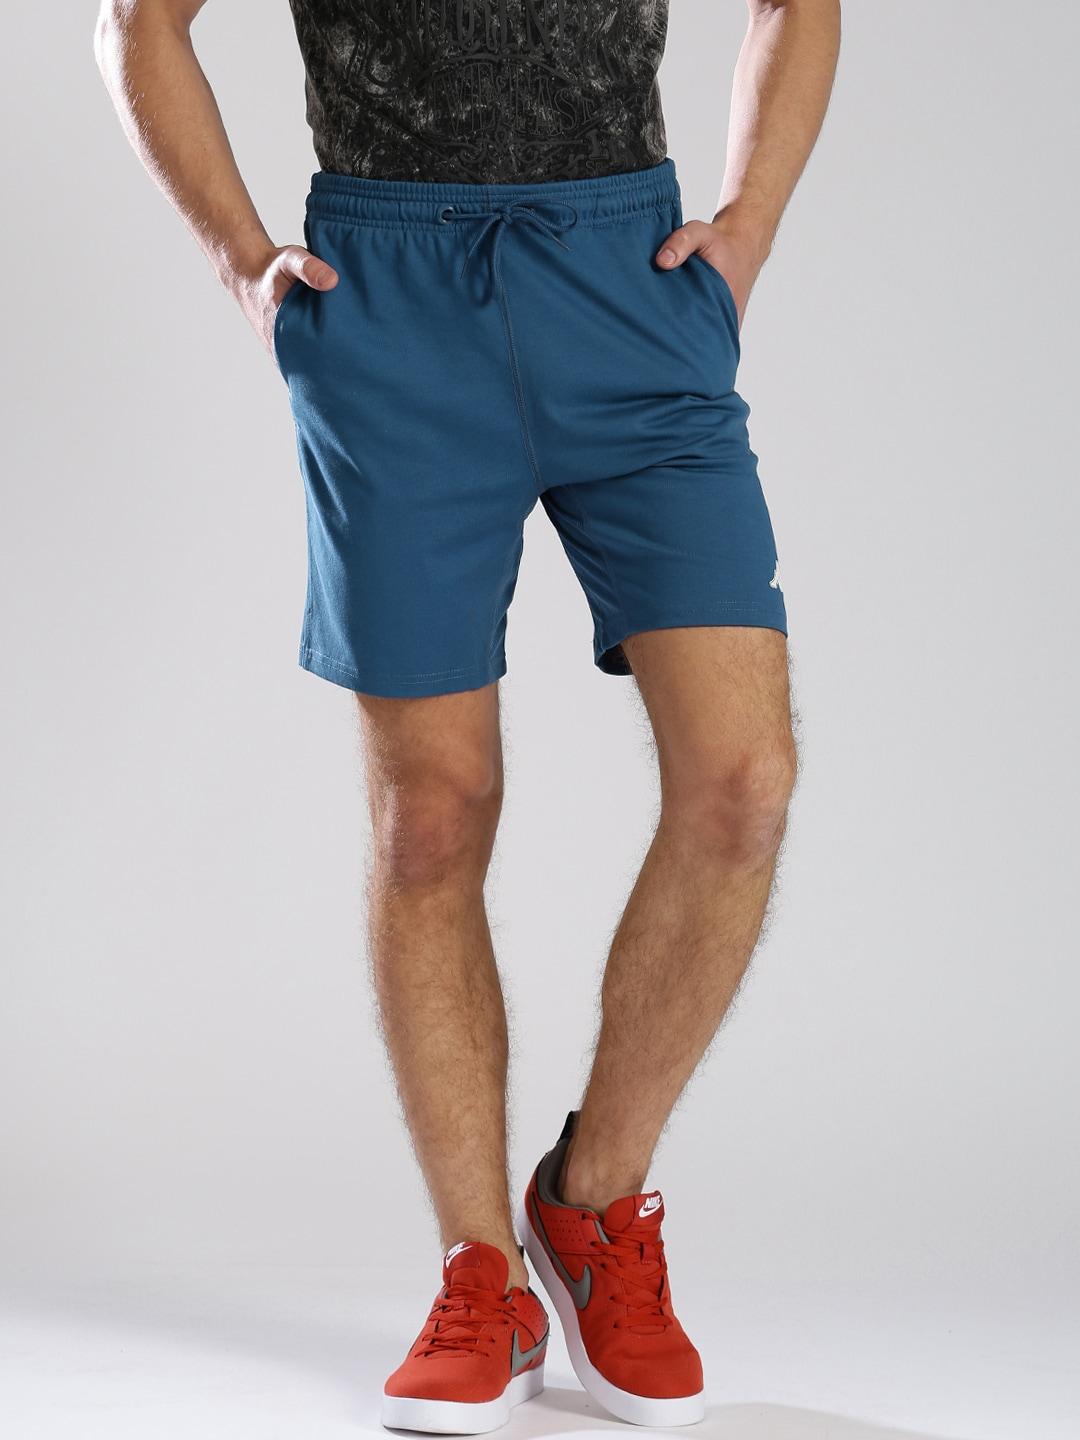 kappa blue shorts